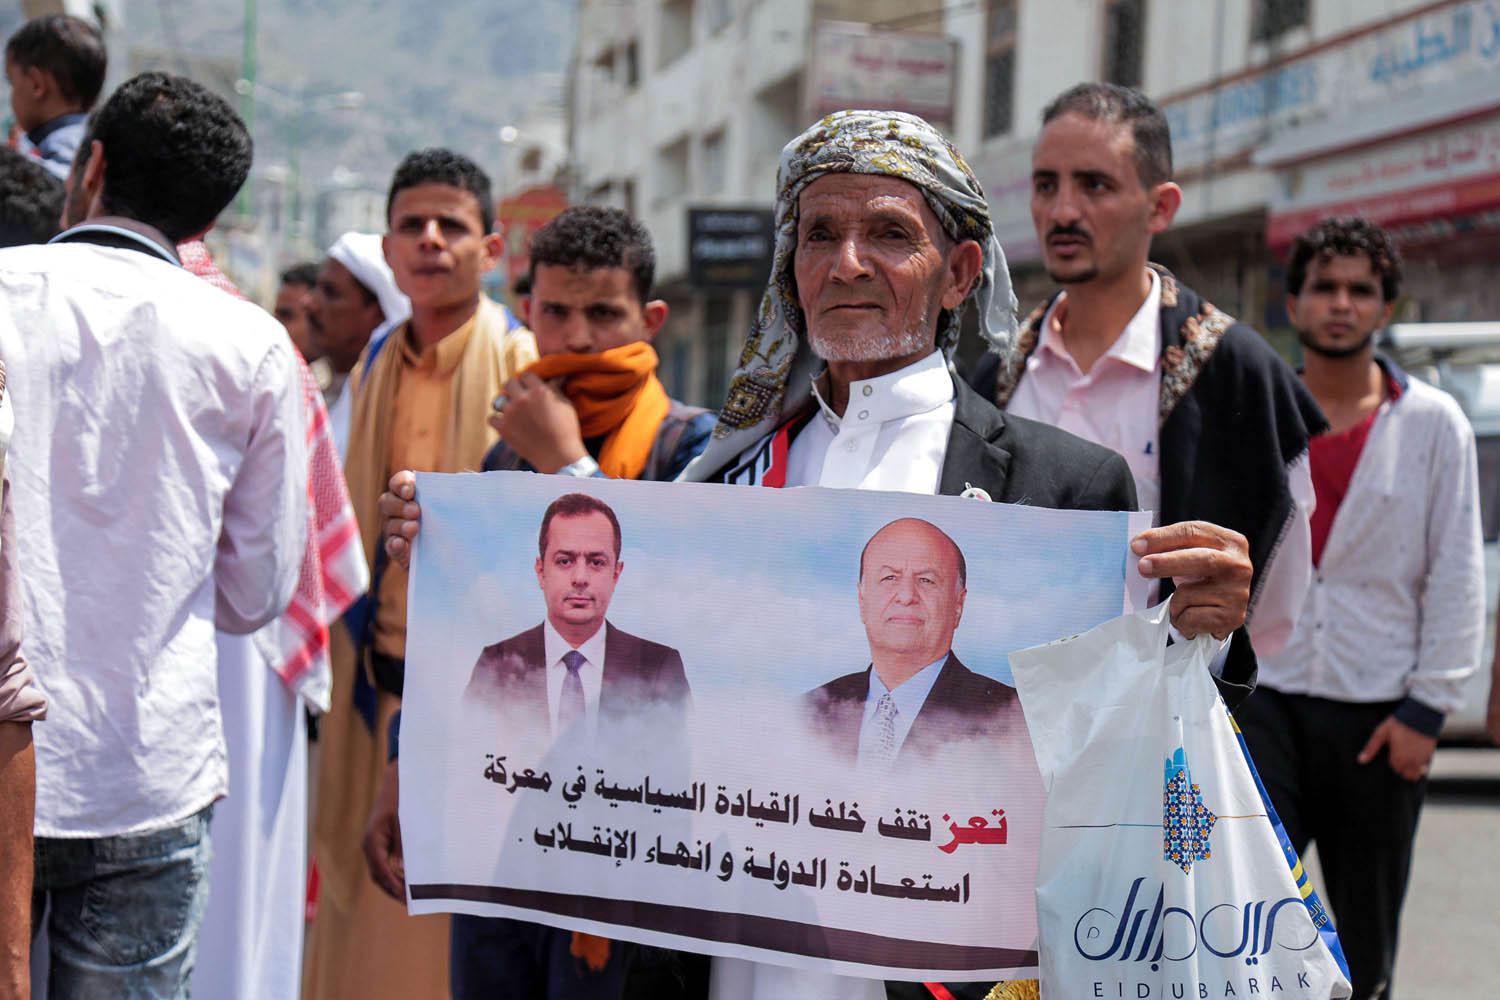 يمني يرفع صورة للرئيس ورئيس الوزراء في تعز